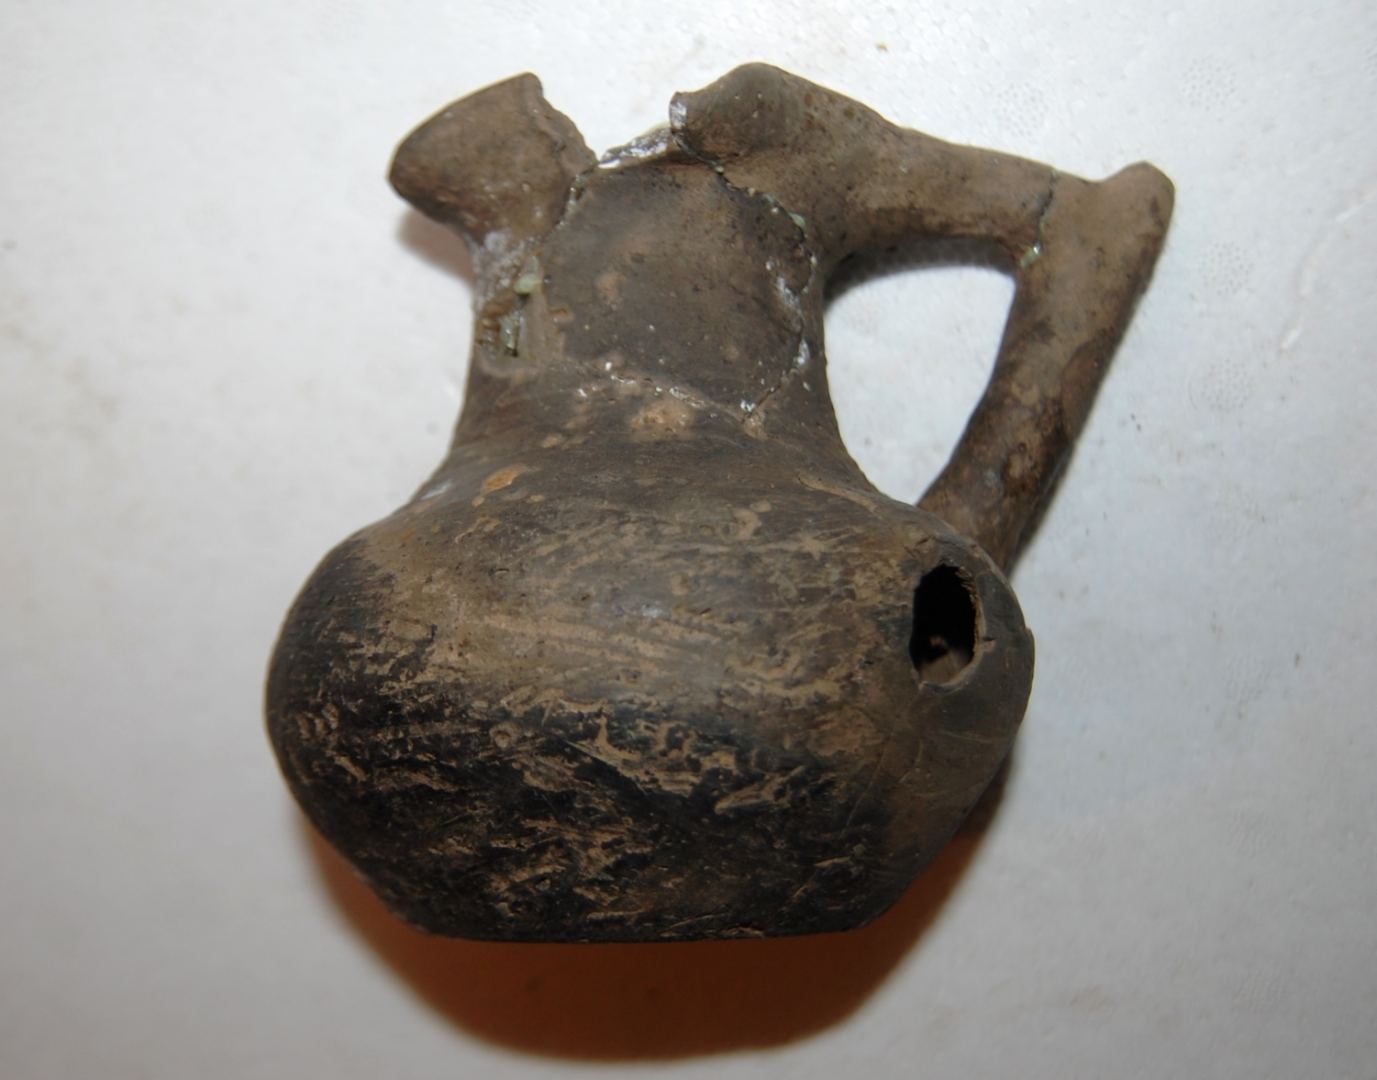 Xınalıqda antik dövrə aid maddi mədəniyyət nümunələri aşkar edildi (FOTO)